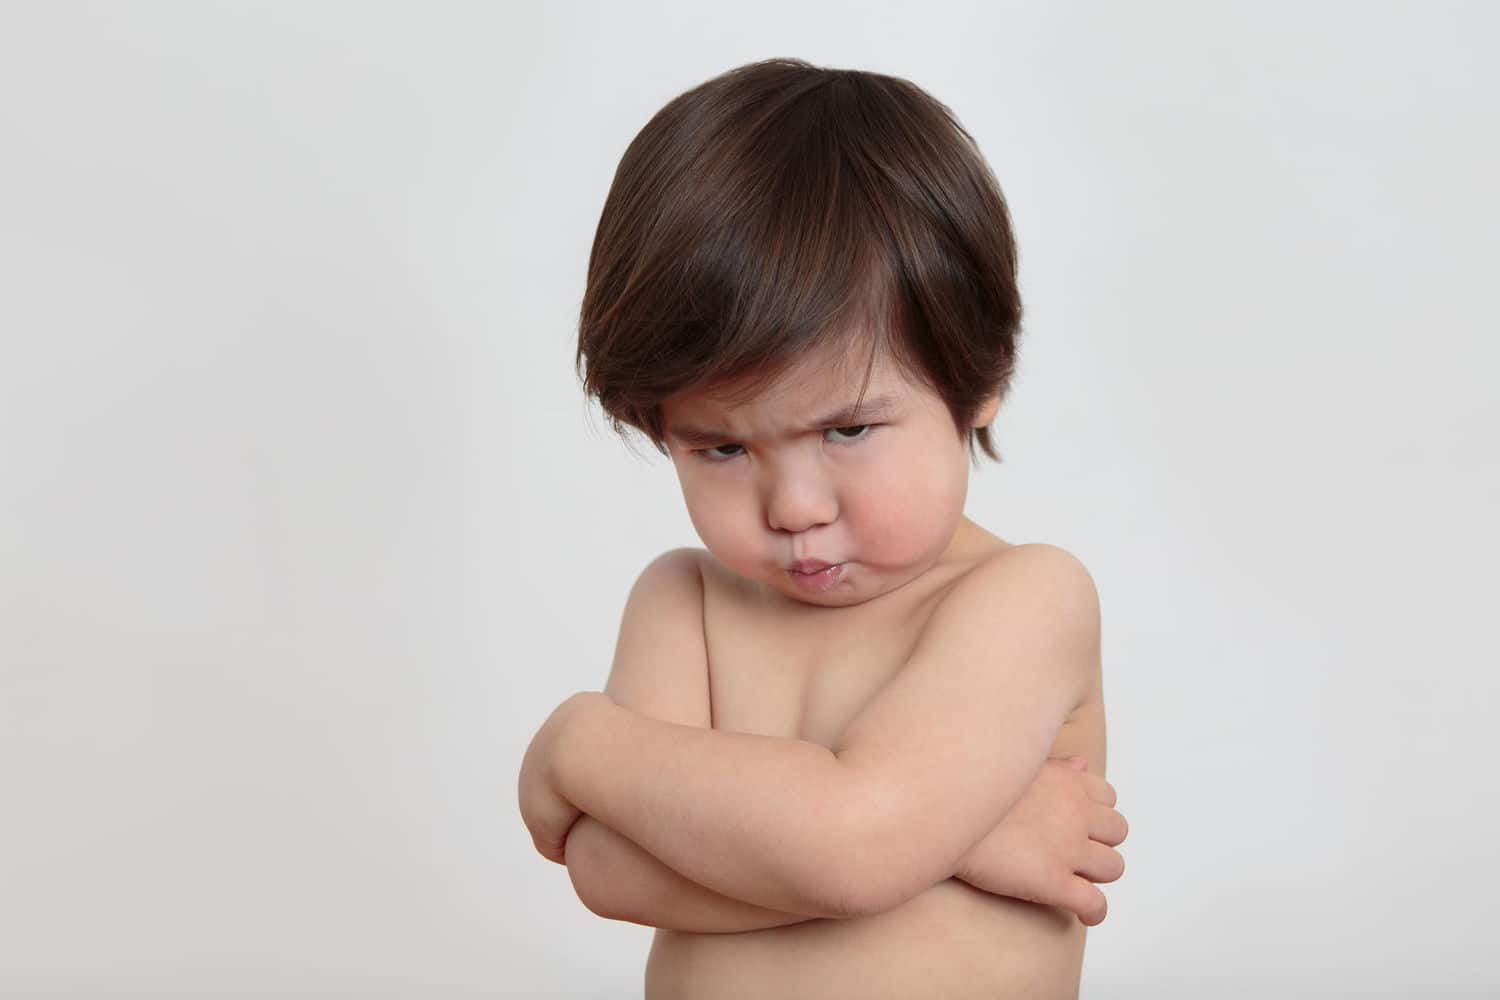 Är ditt barn lätt arg? Här är 6 tips för att övervinna det